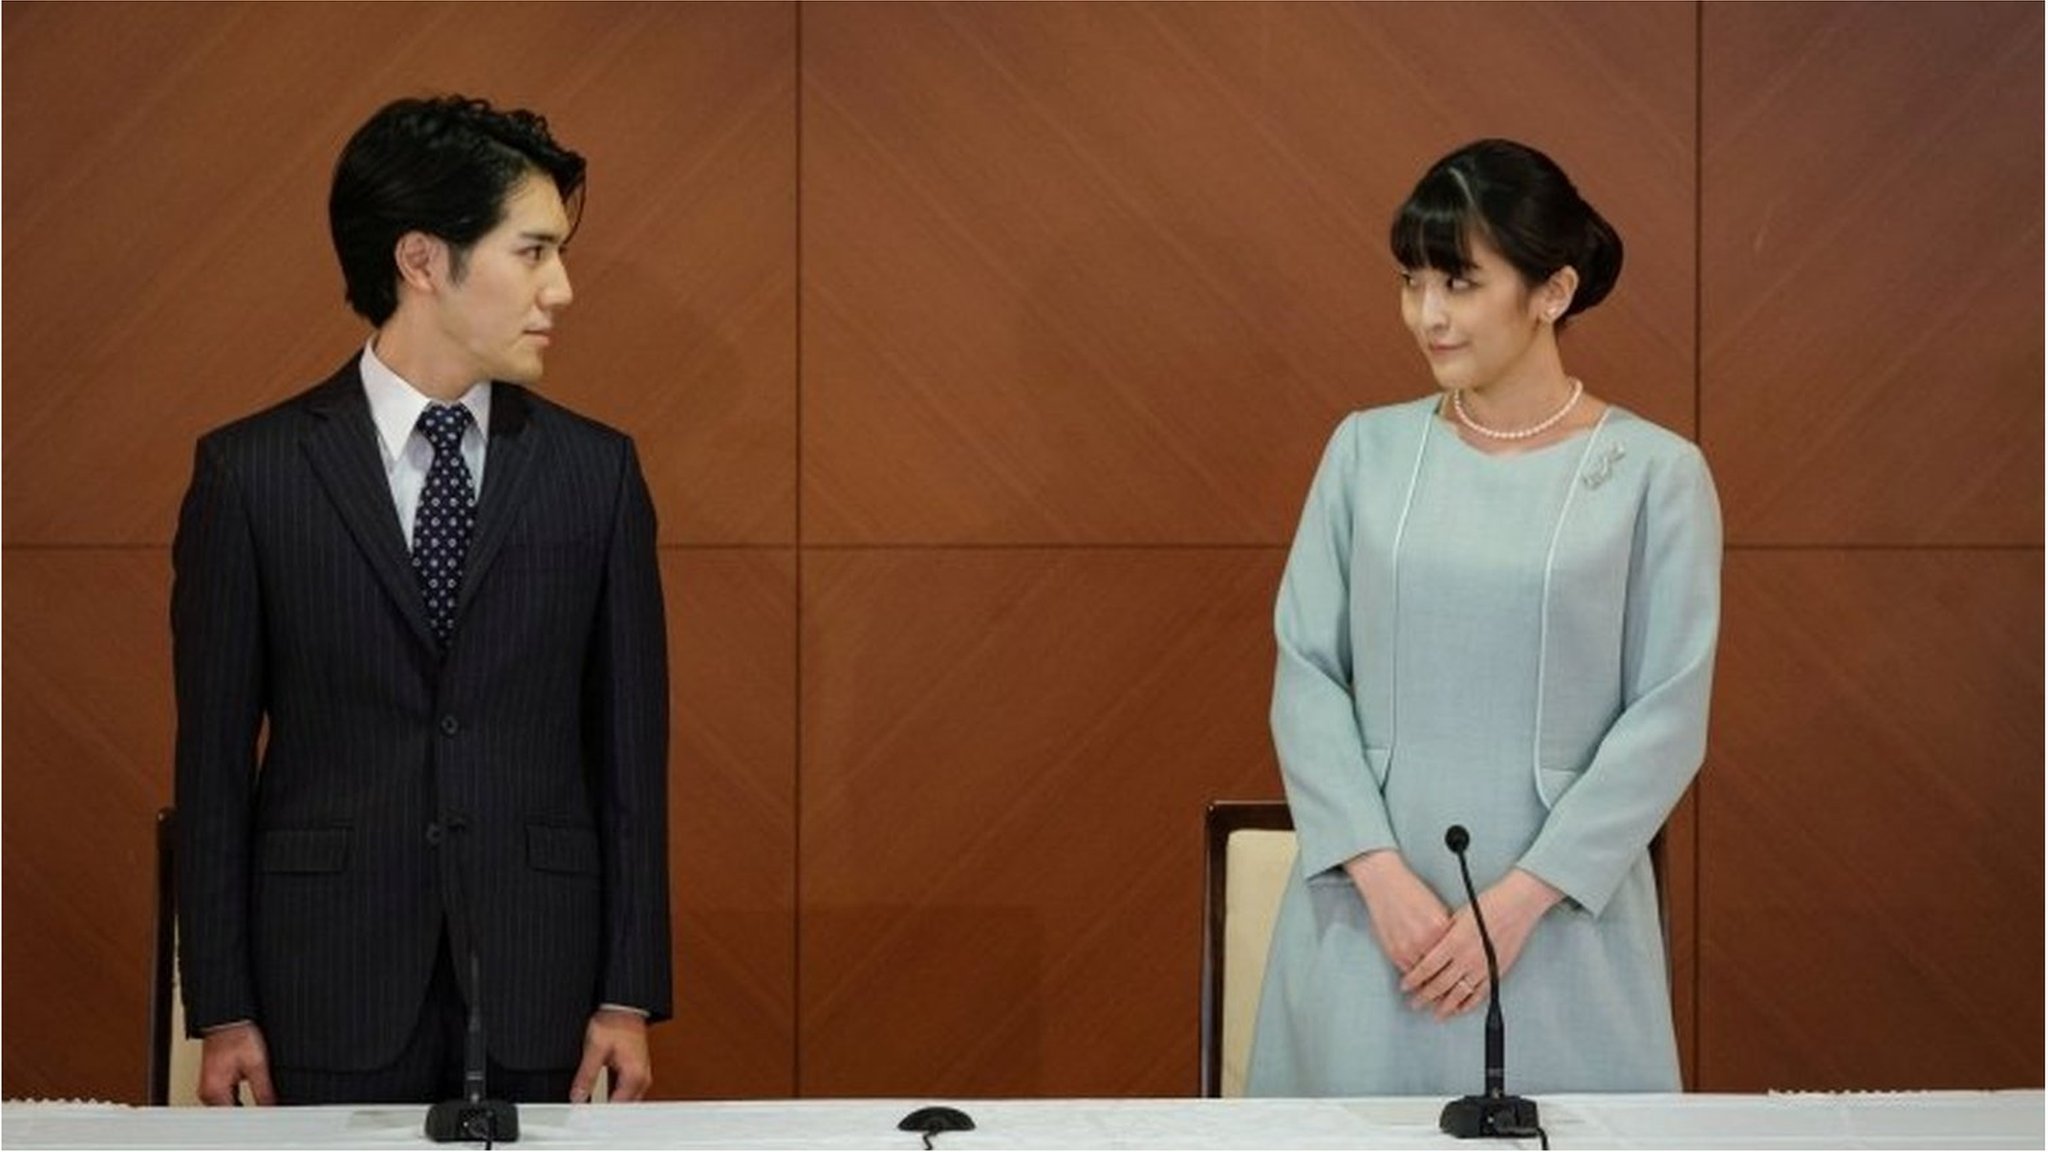 眞子さんと小室圭さんが結婚 「自分たちの心に忠実に」 - BBCニュース